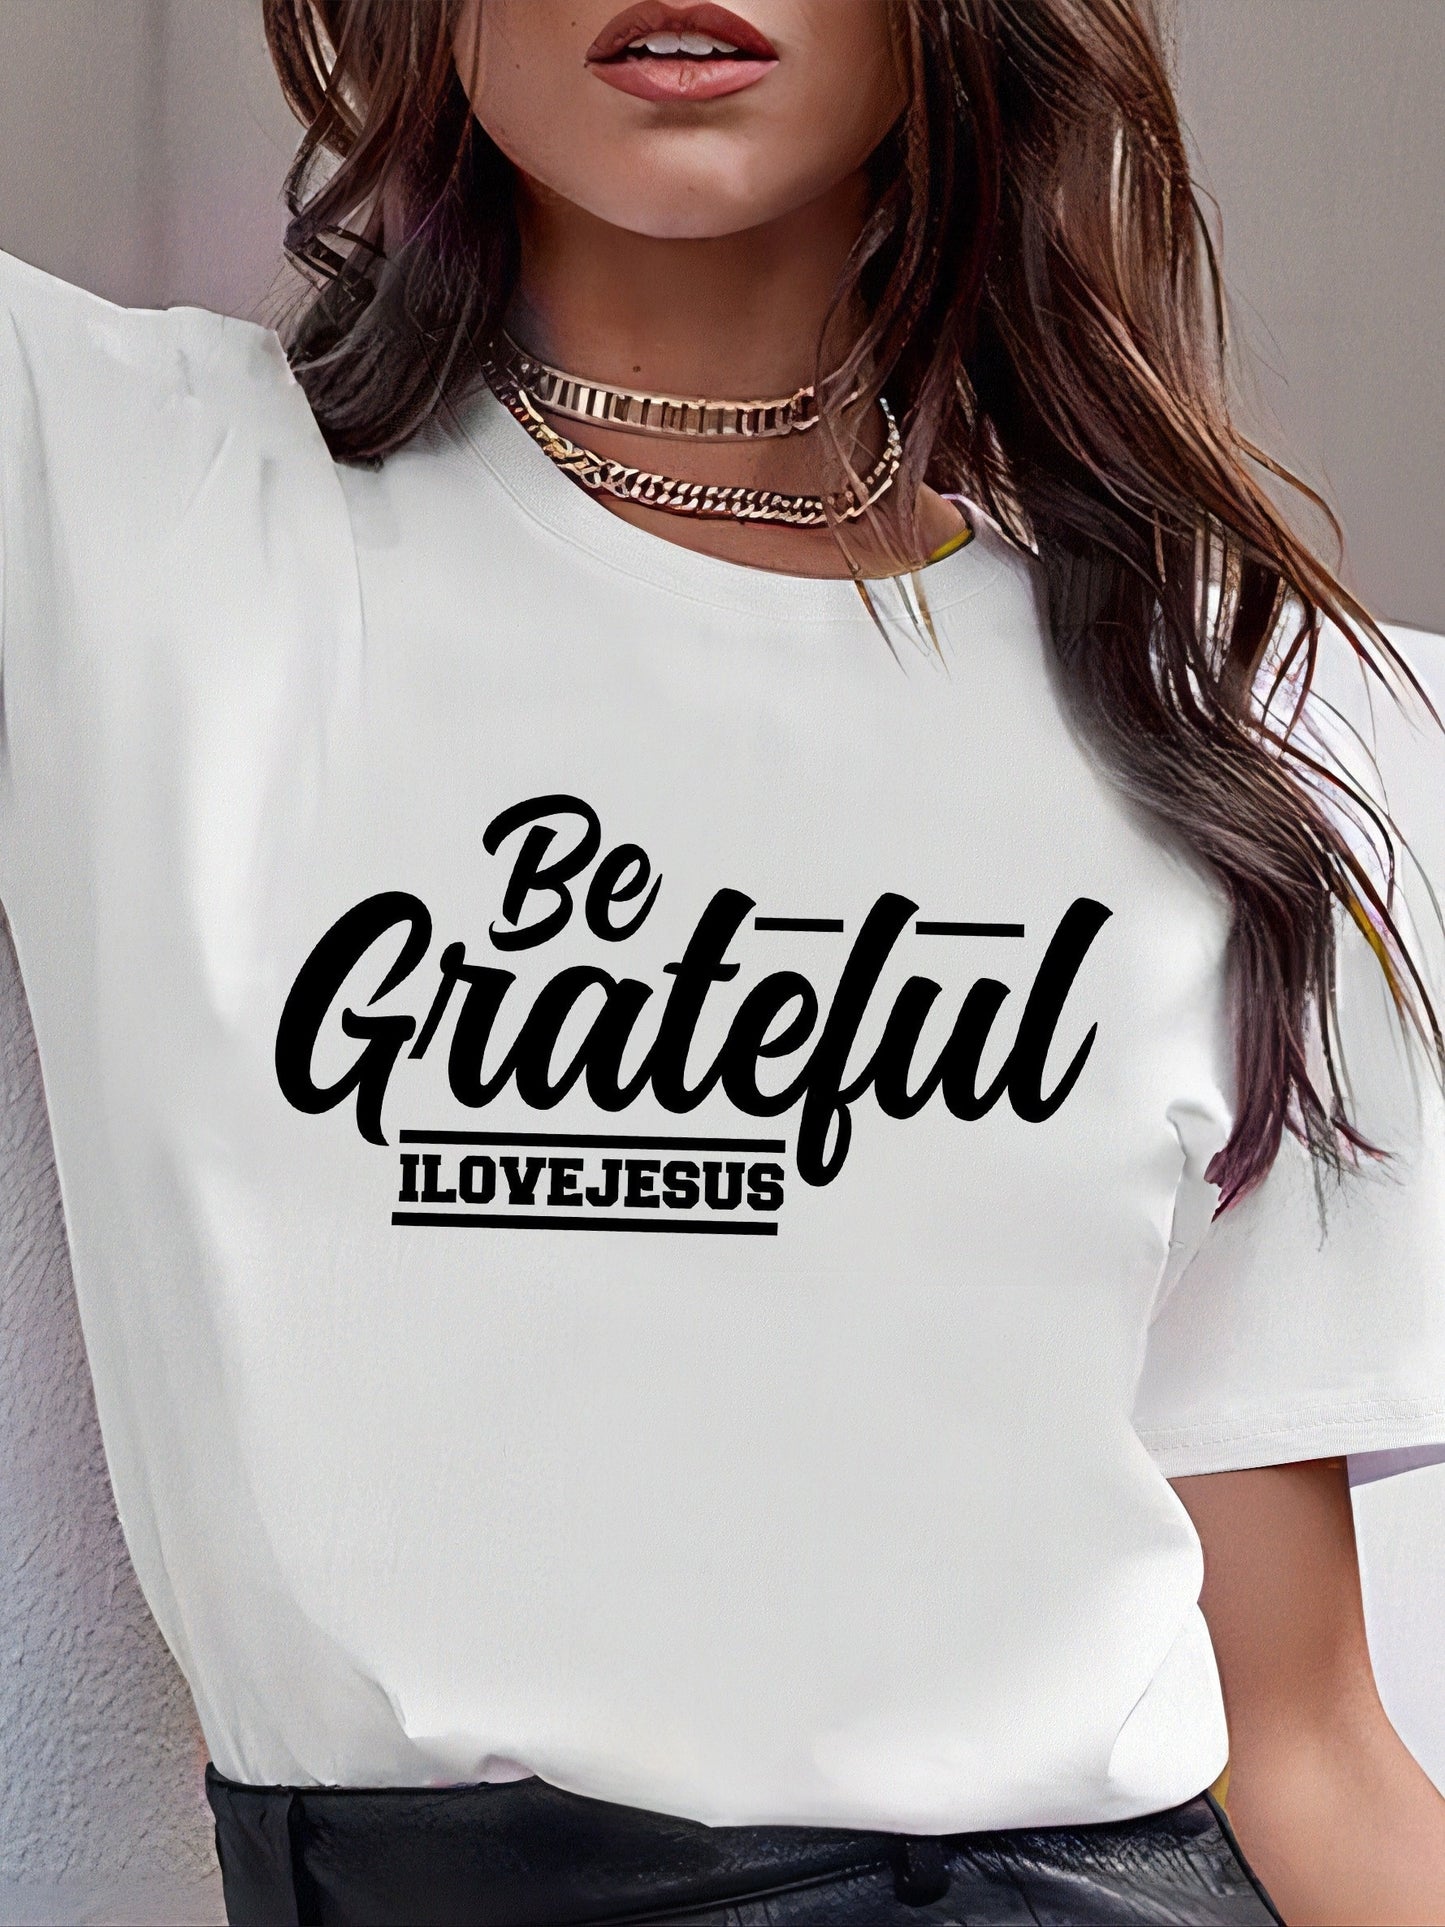 Be Grateful Women's Christian T-shirt claimedbygoddesigns